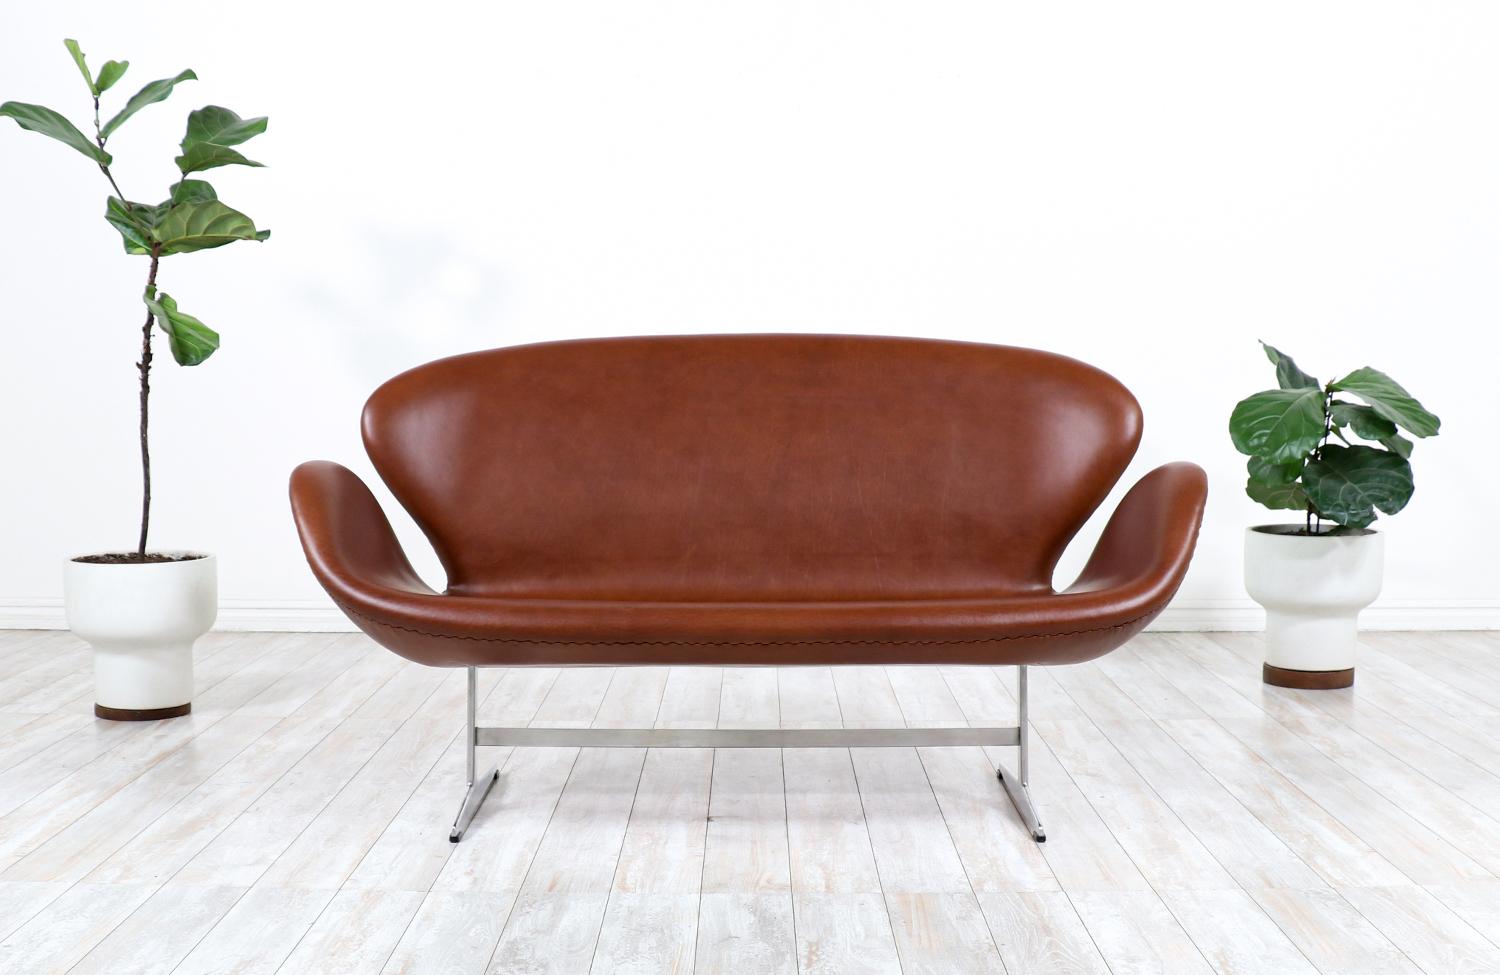 Conçu à l'origine pour l'hôtel SAS Royal de Copenhague, le canapé Swan du pionnier du design danois, Arne Jacobsen, est devenu une icône et un synonyme de la modernité danoise. Rembourré dans un superbe cuir pleine fleur cognac, ce modèle